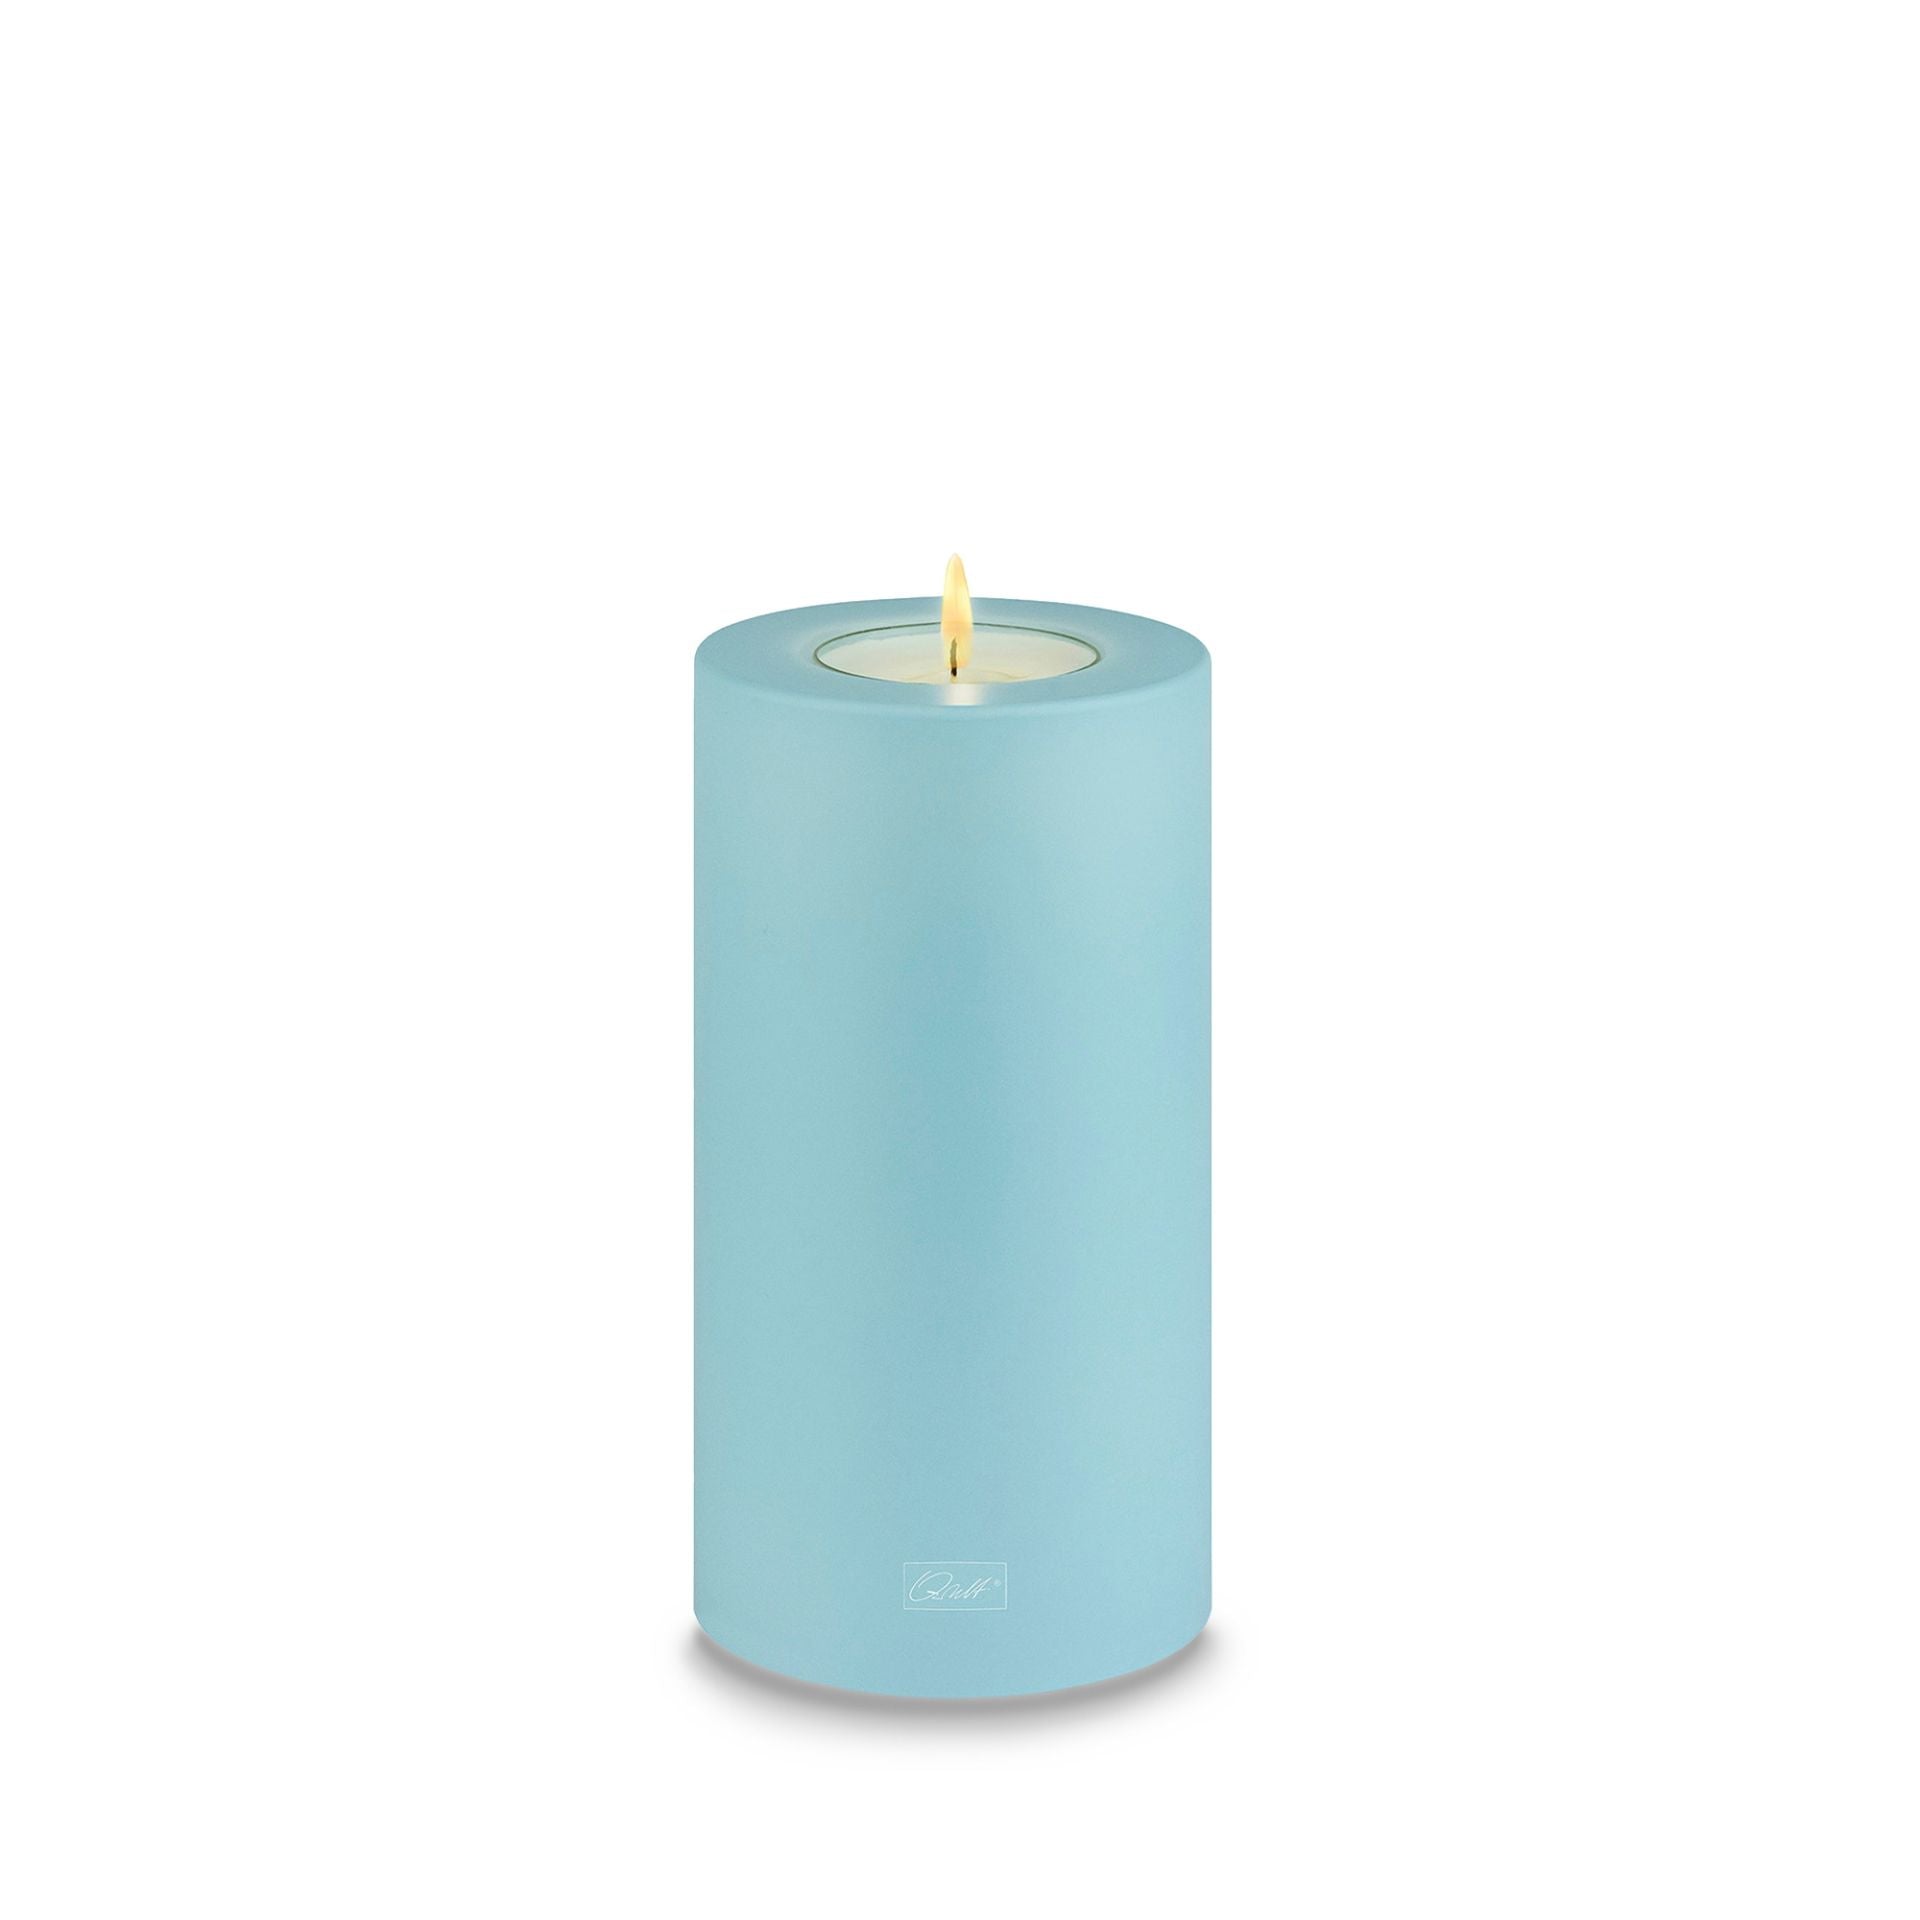 Qult Trend tealight holder in candle shape Color Ø 8 cm